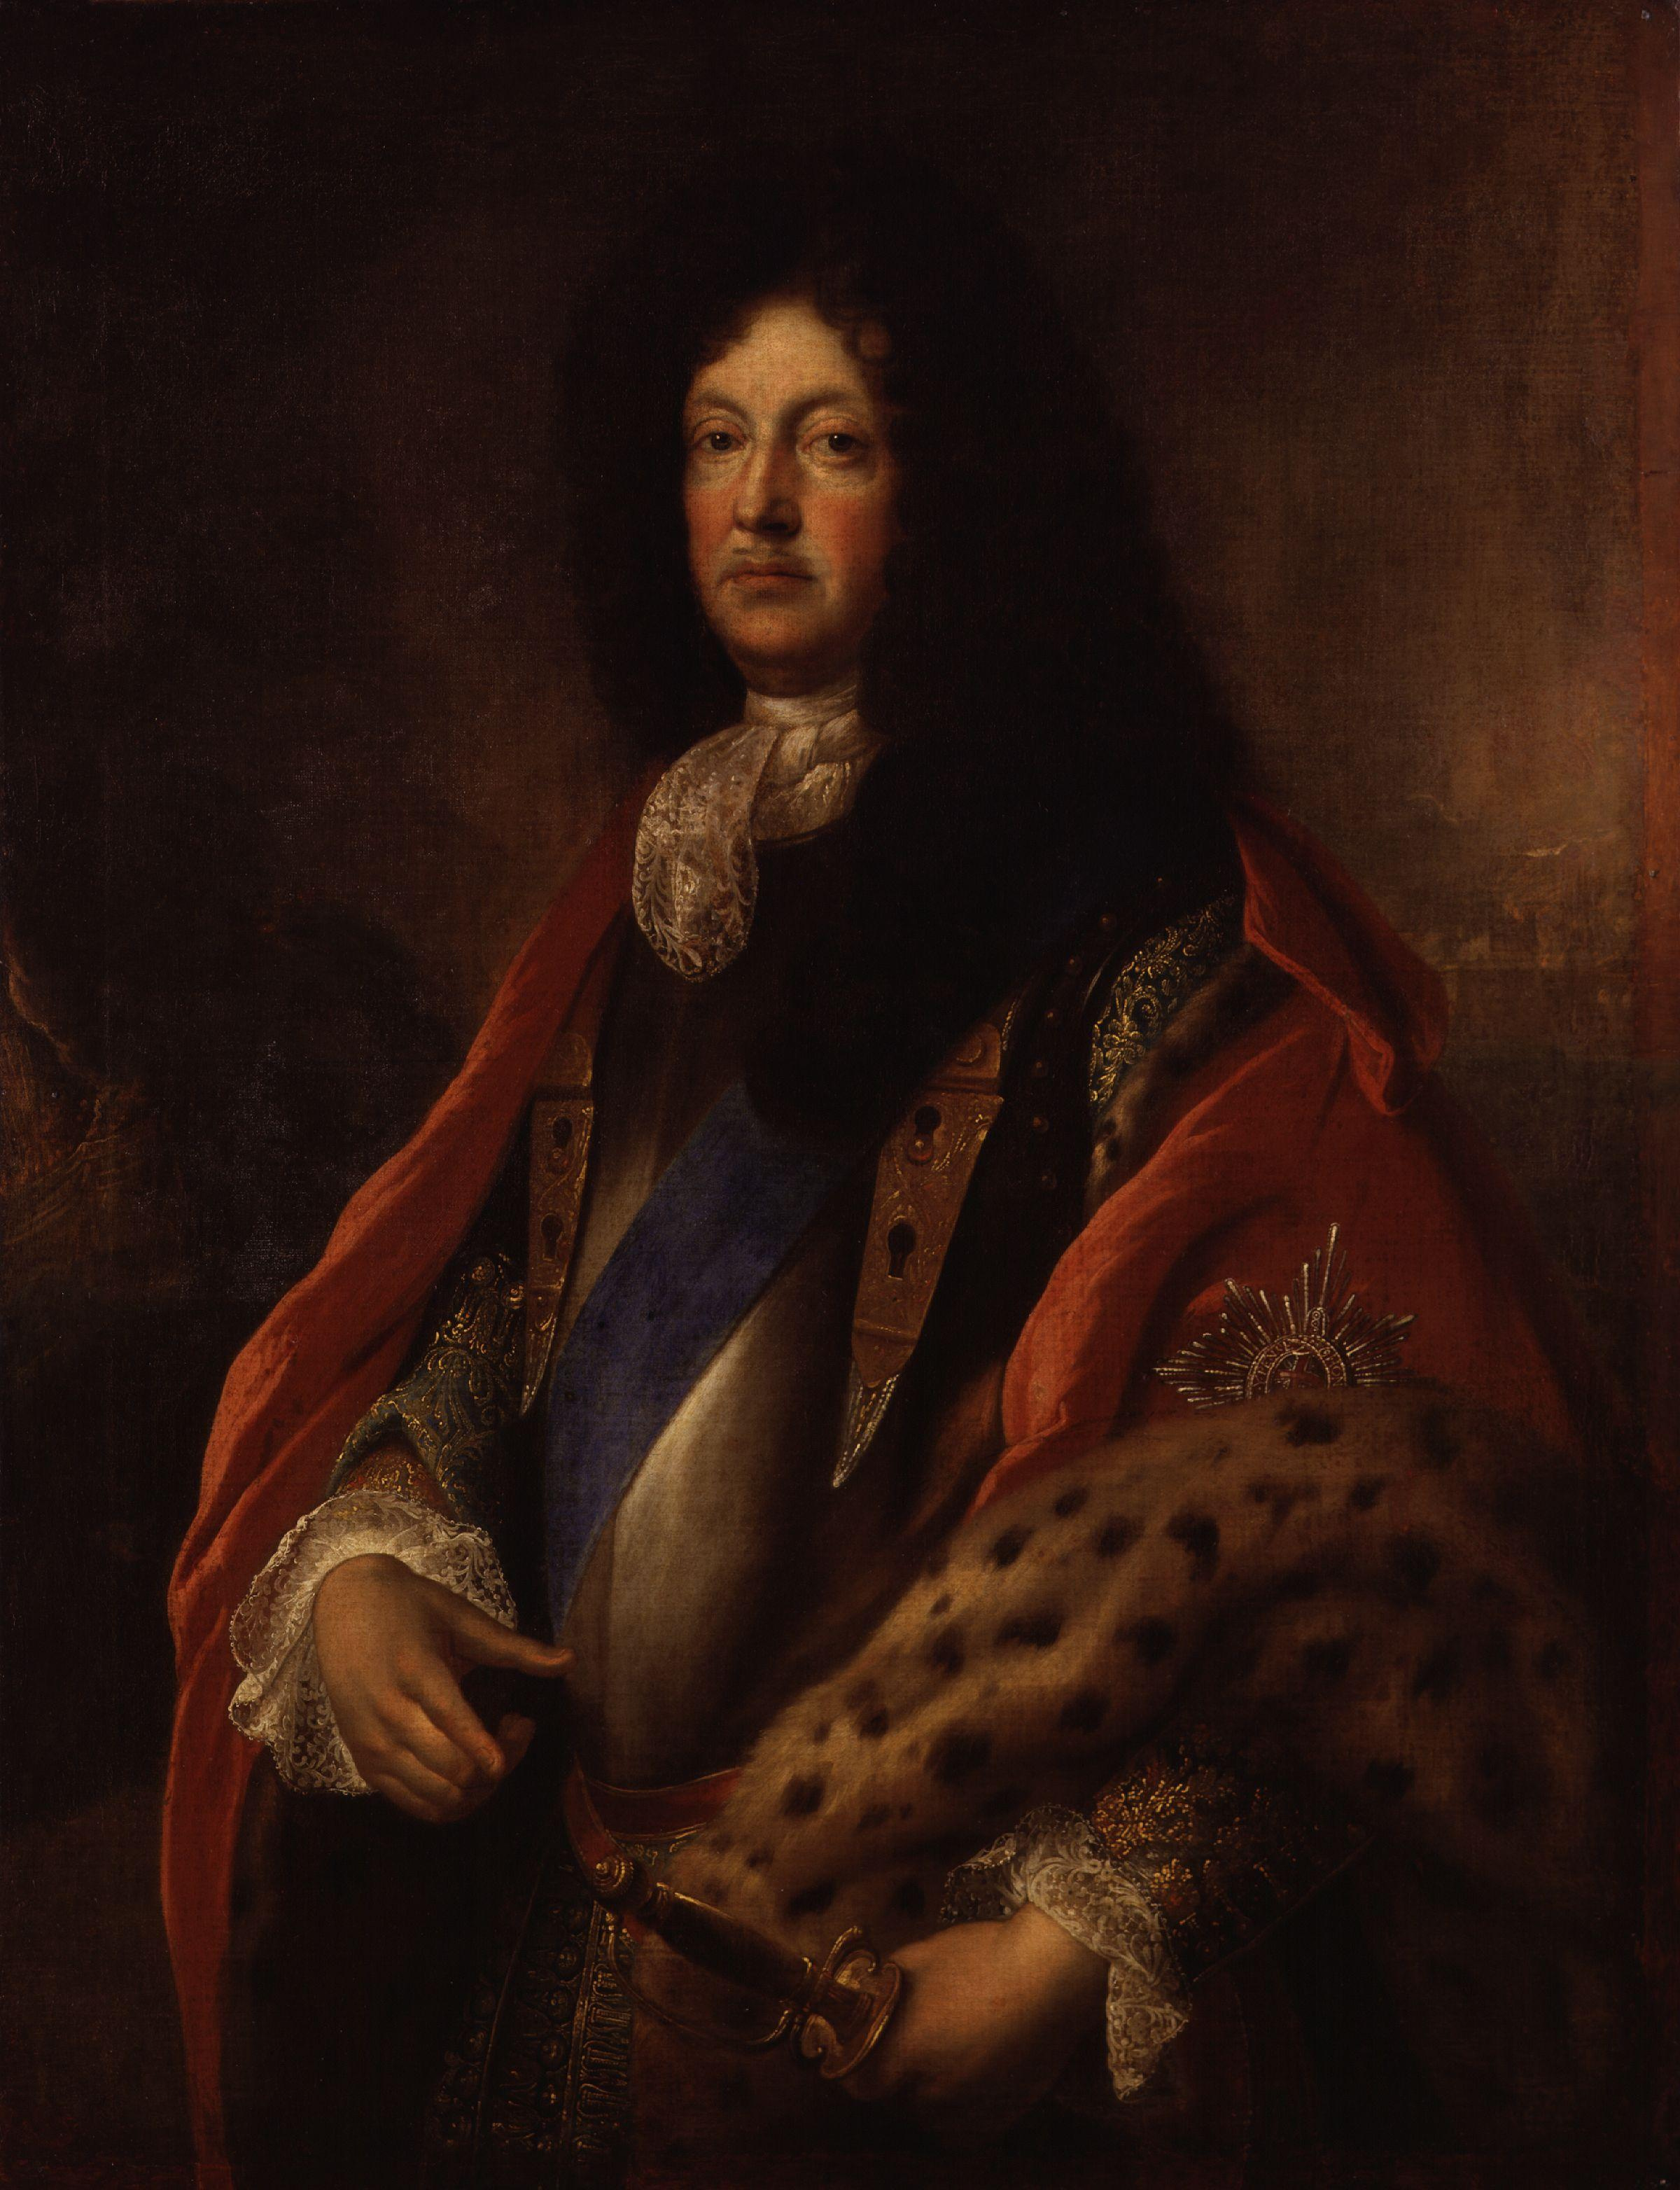 Richard Talbot, Earl of Tyrconnel by François de Troy